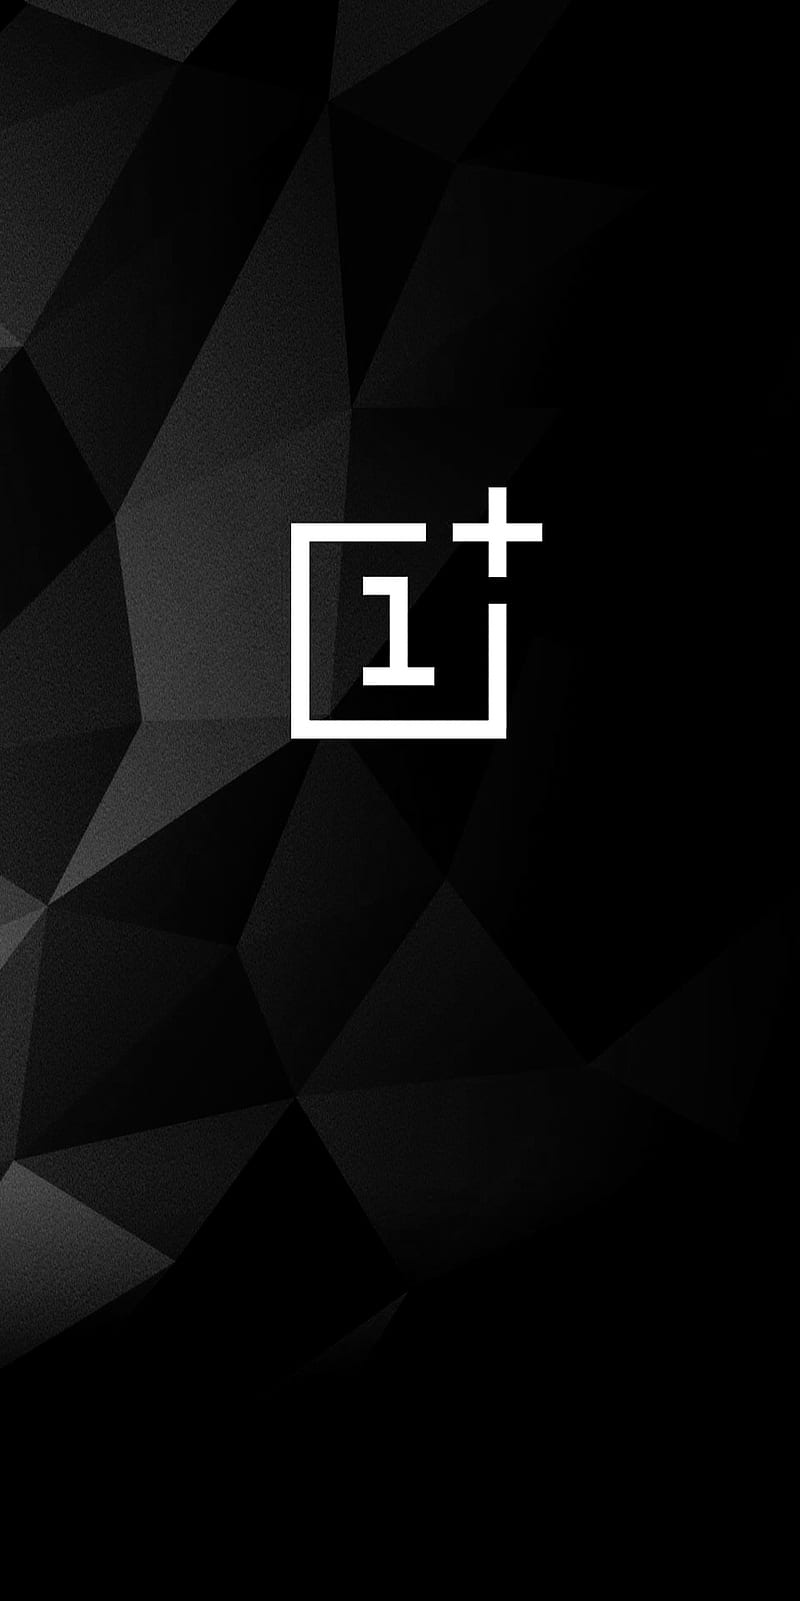 Oneplus 5t black, dark, grain, logo, never, settle, HD phone wallpaper